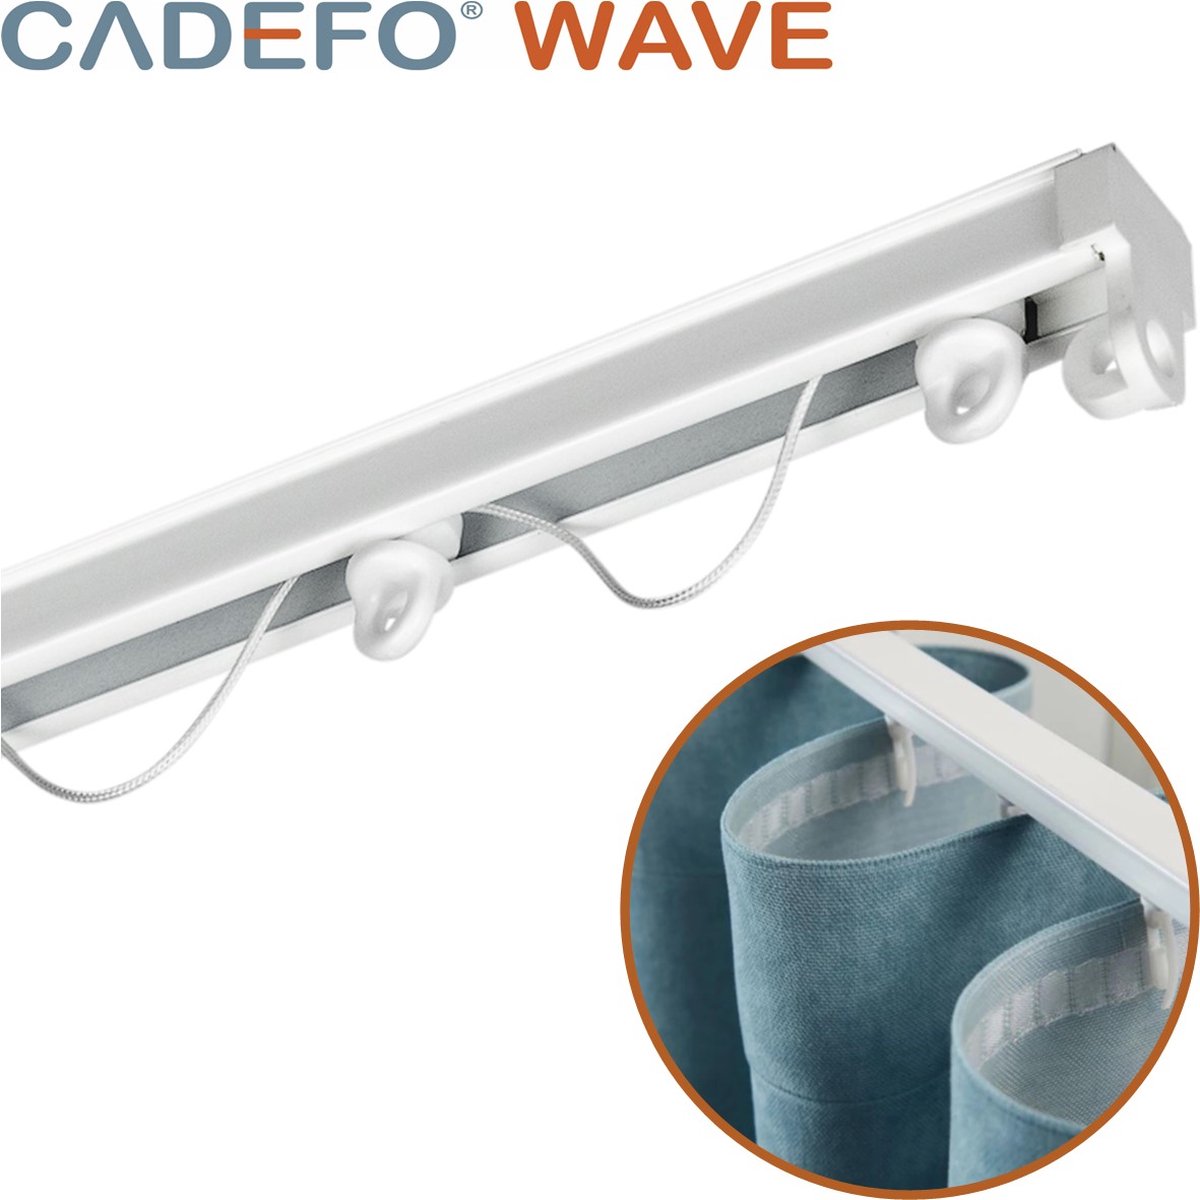 CADEFO WAVE (301 - 350 cm) Gordijnrails - Compleet op maat! - UIT 1 STUK - Leverbaar tot 6 meter - Plafondbevestiging - Lengte 338 cm